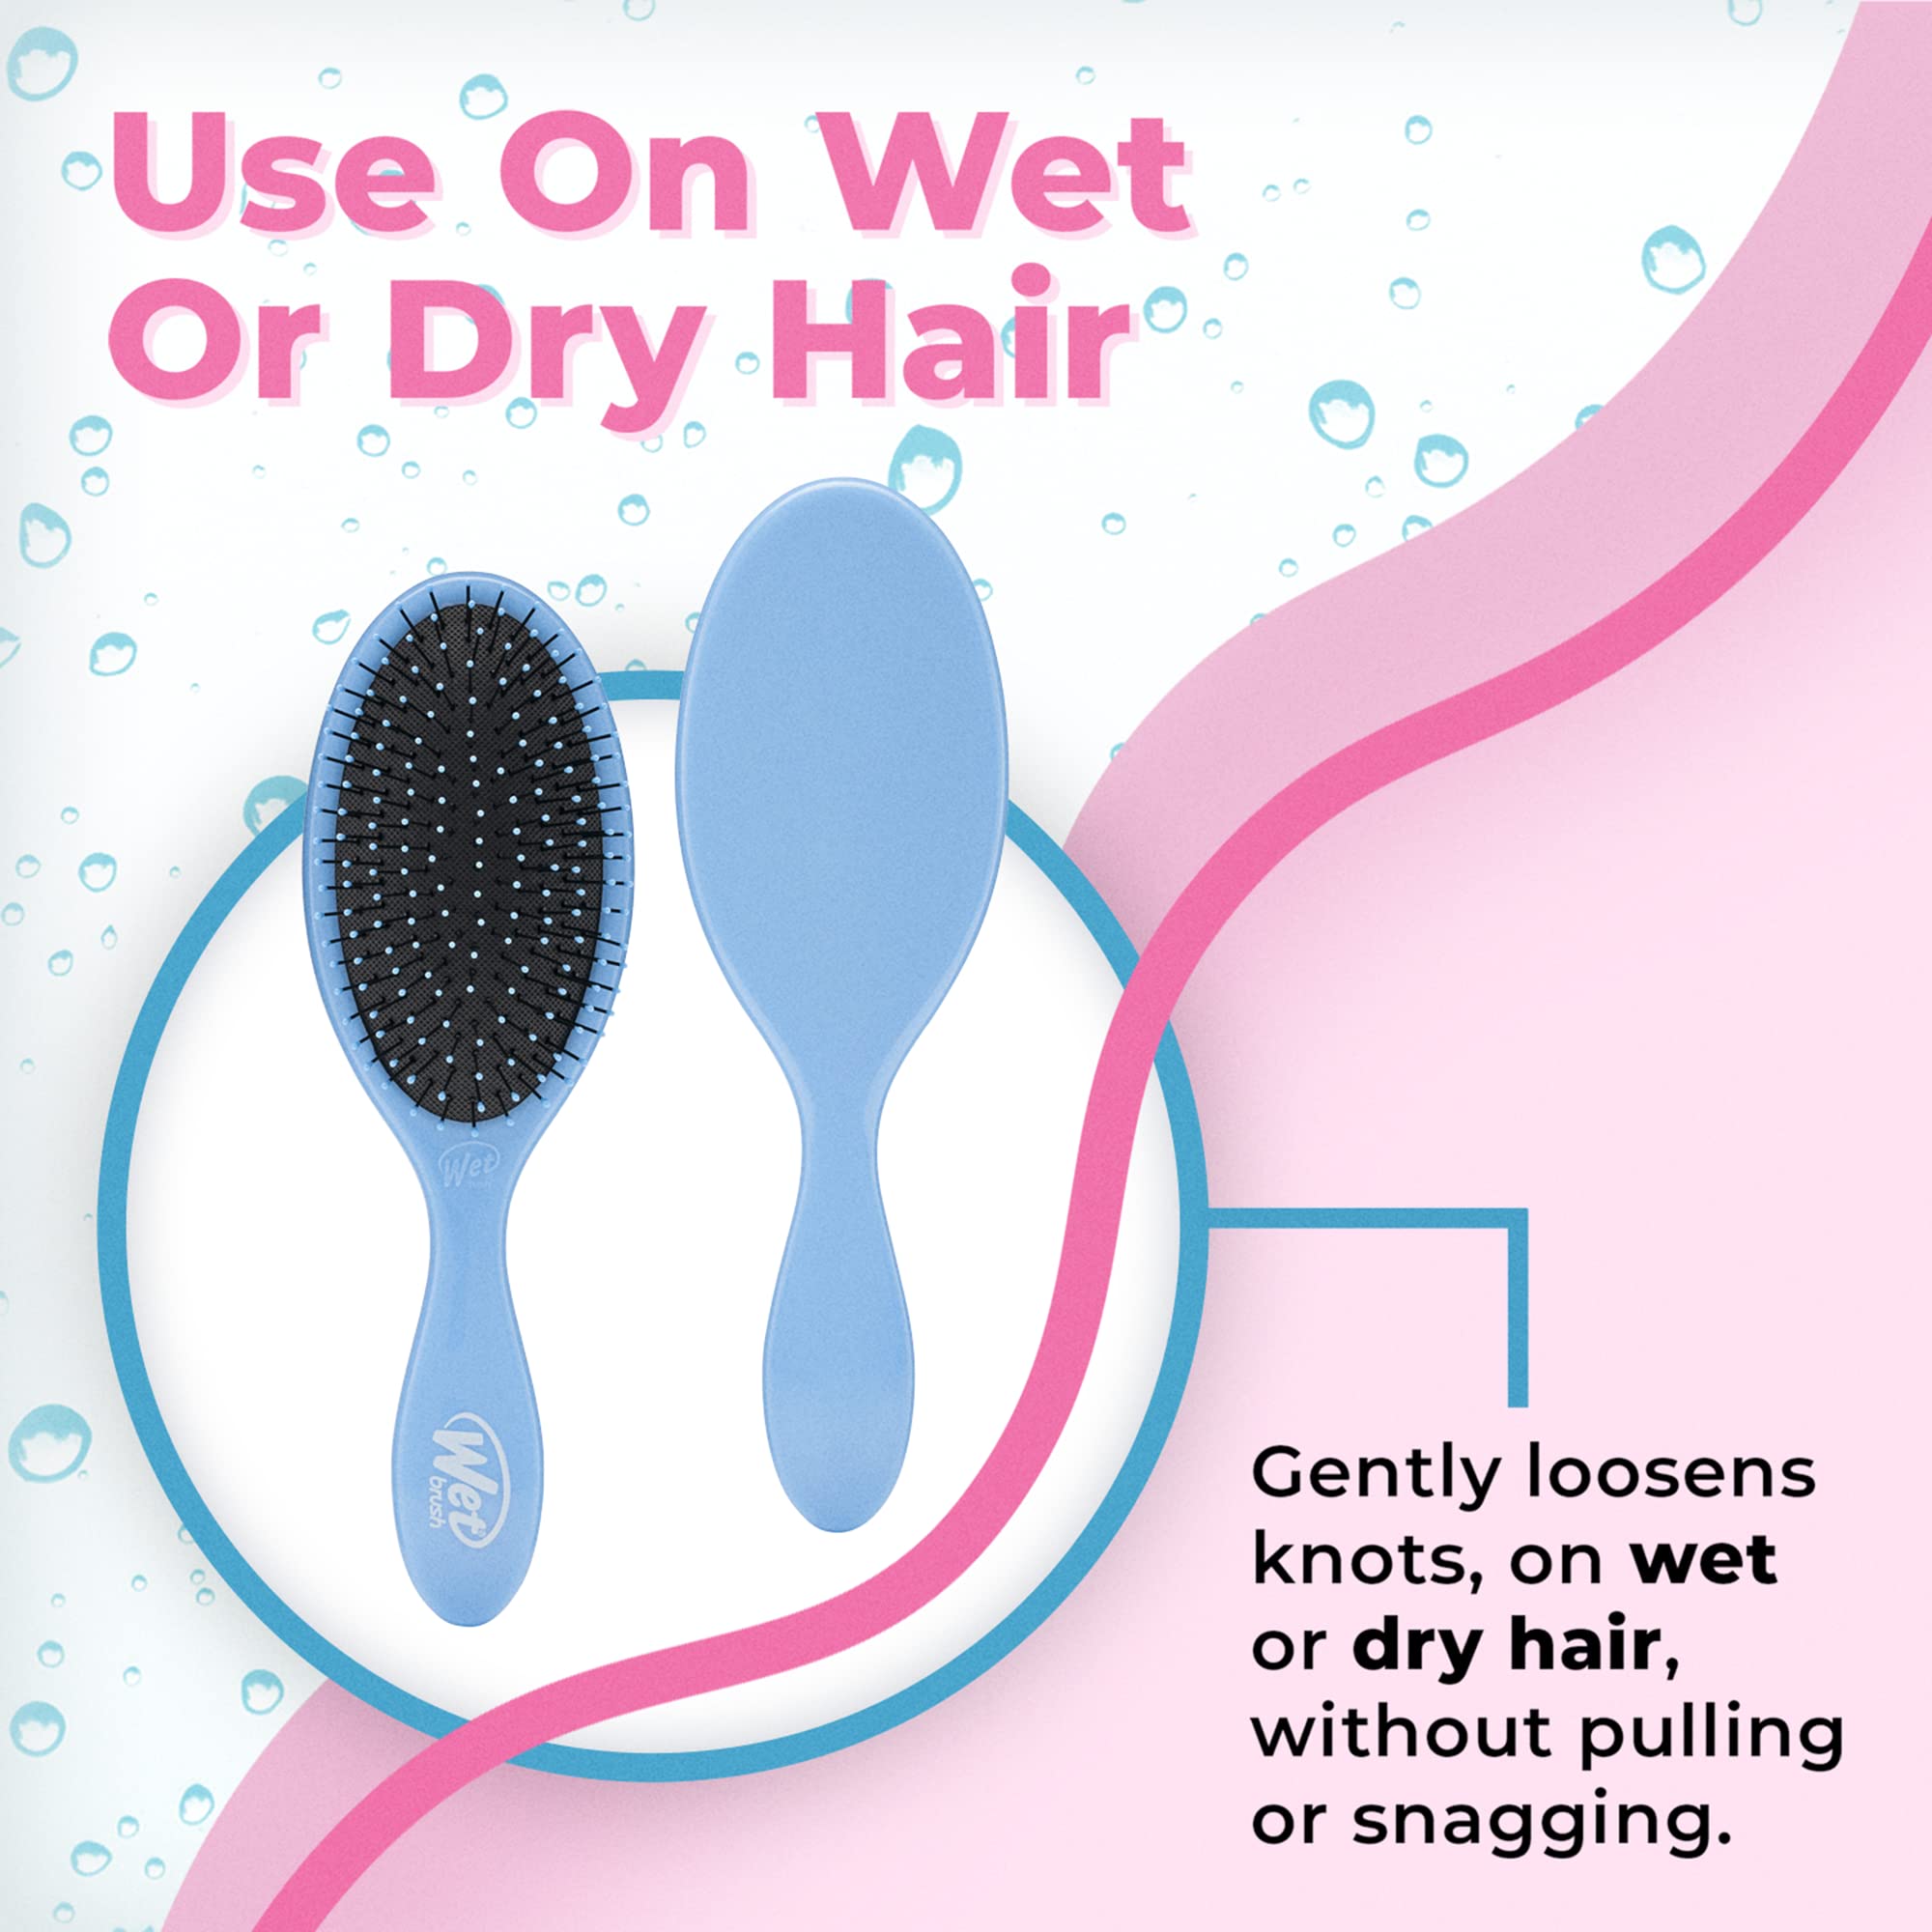 Wet Brush Original Detangler Brush - Sky - All Hair Types - Ultra-Soft IntelliFlex Bristles Glide Through Tangles with Ease - Pain-Free Comb for Men, Women, Boys and Girls